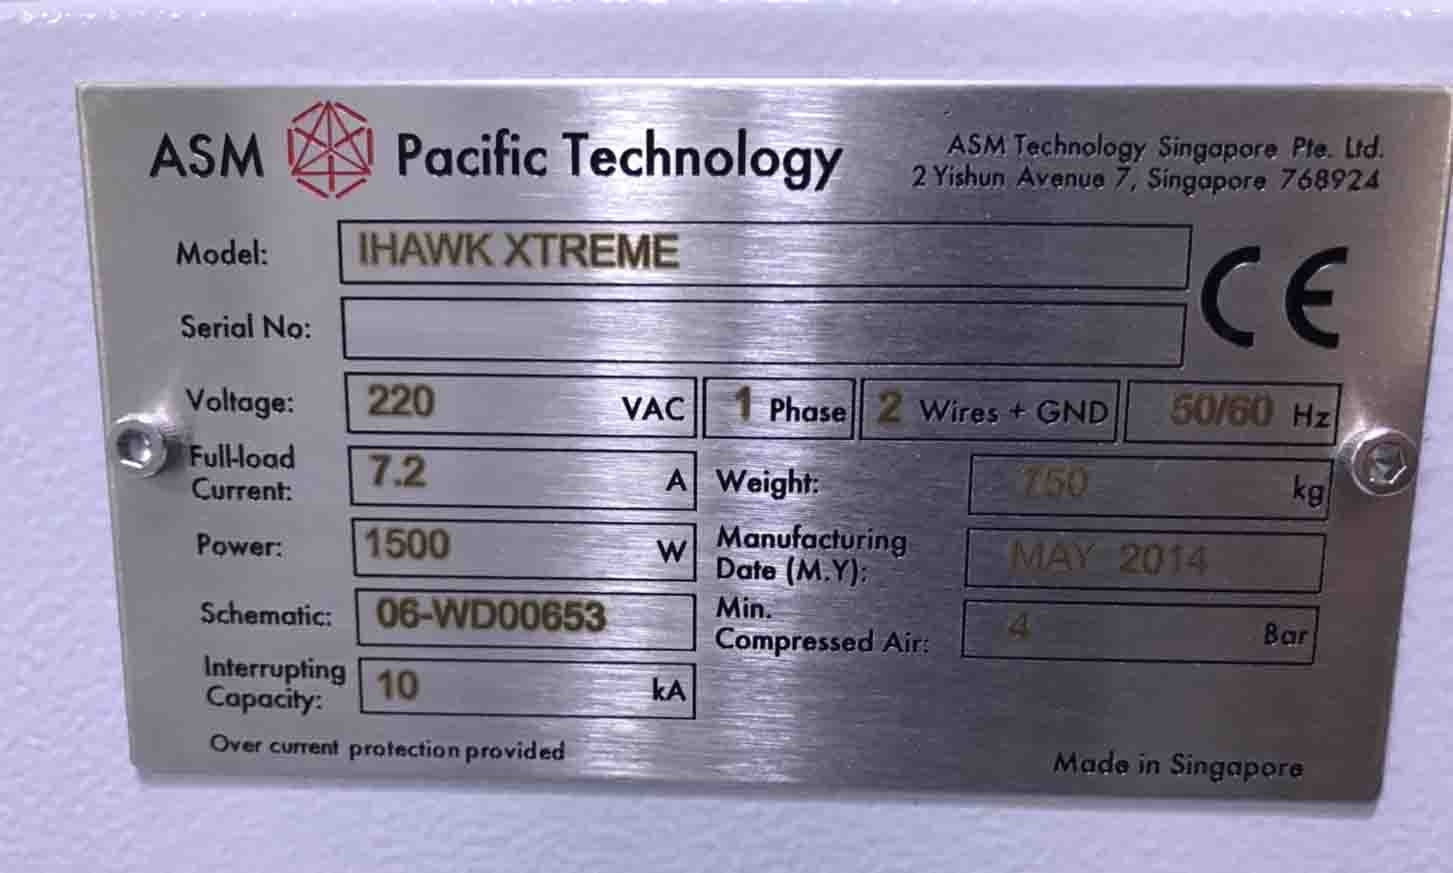 圖為 已使用的 ASM iHawk Xtreme 待售